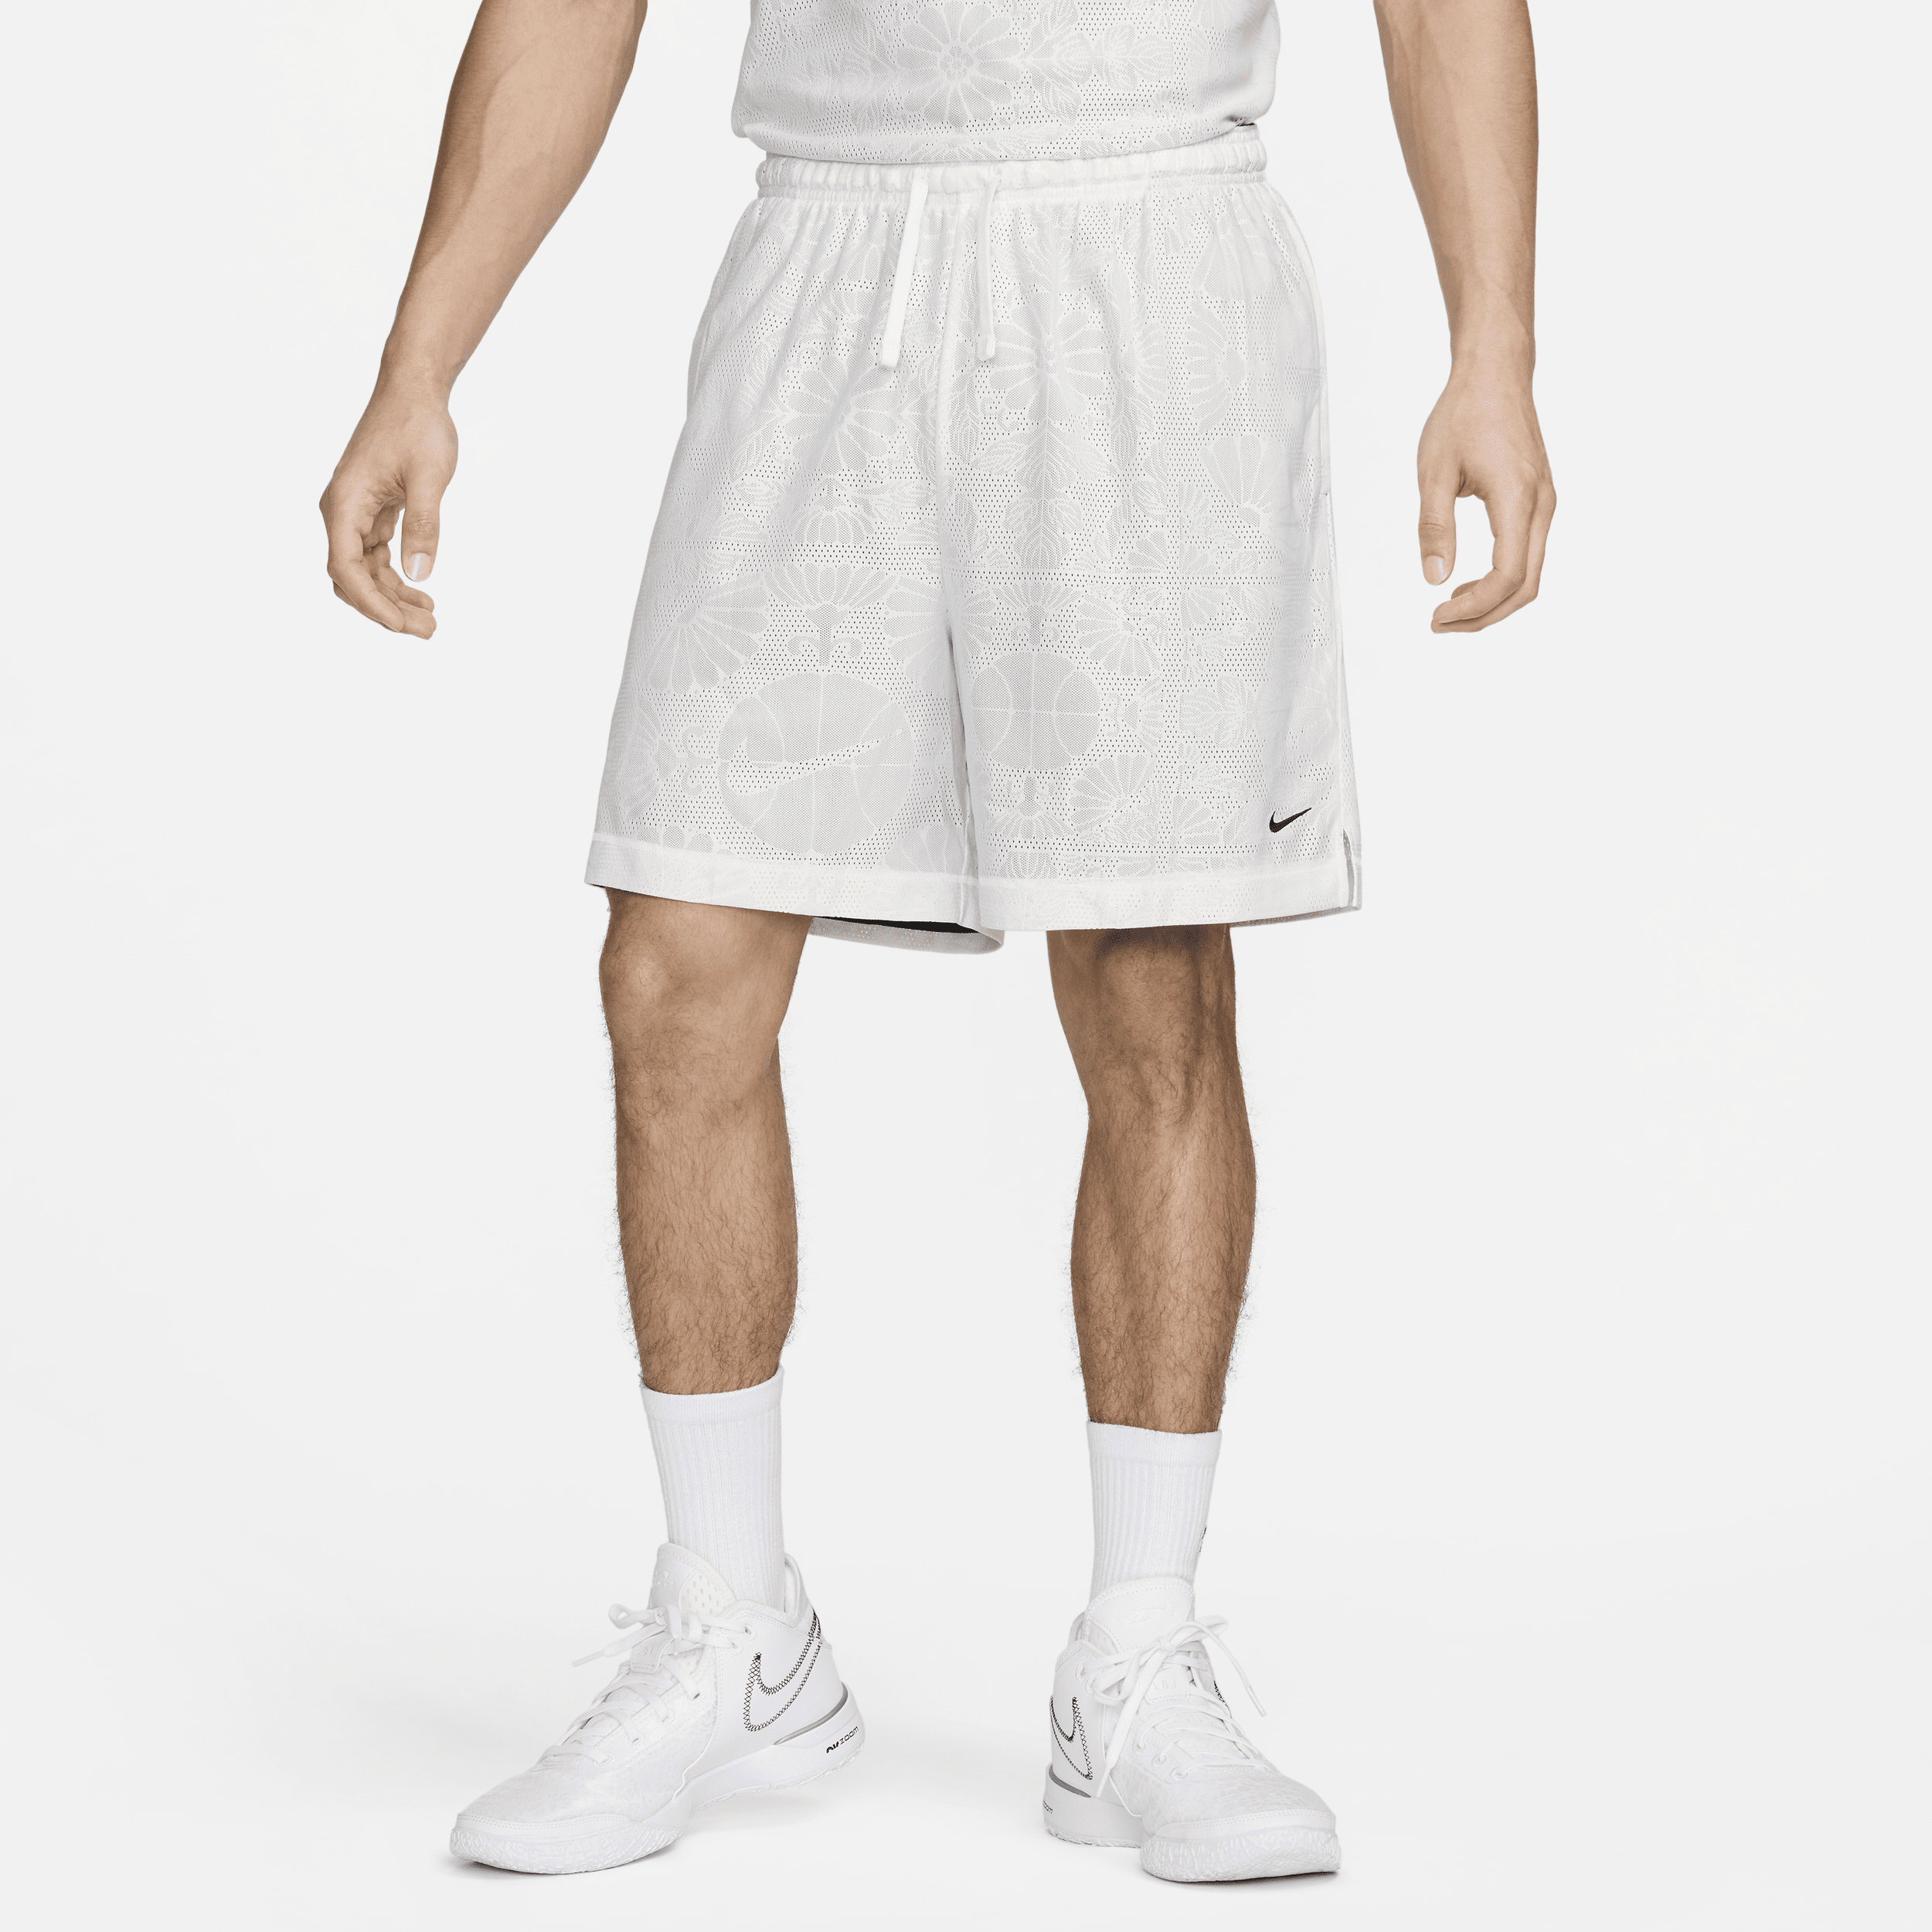 Vendbare Nike Standard Issue Dri-FIT--basketballshorts (15 cm) til mænd - hvid